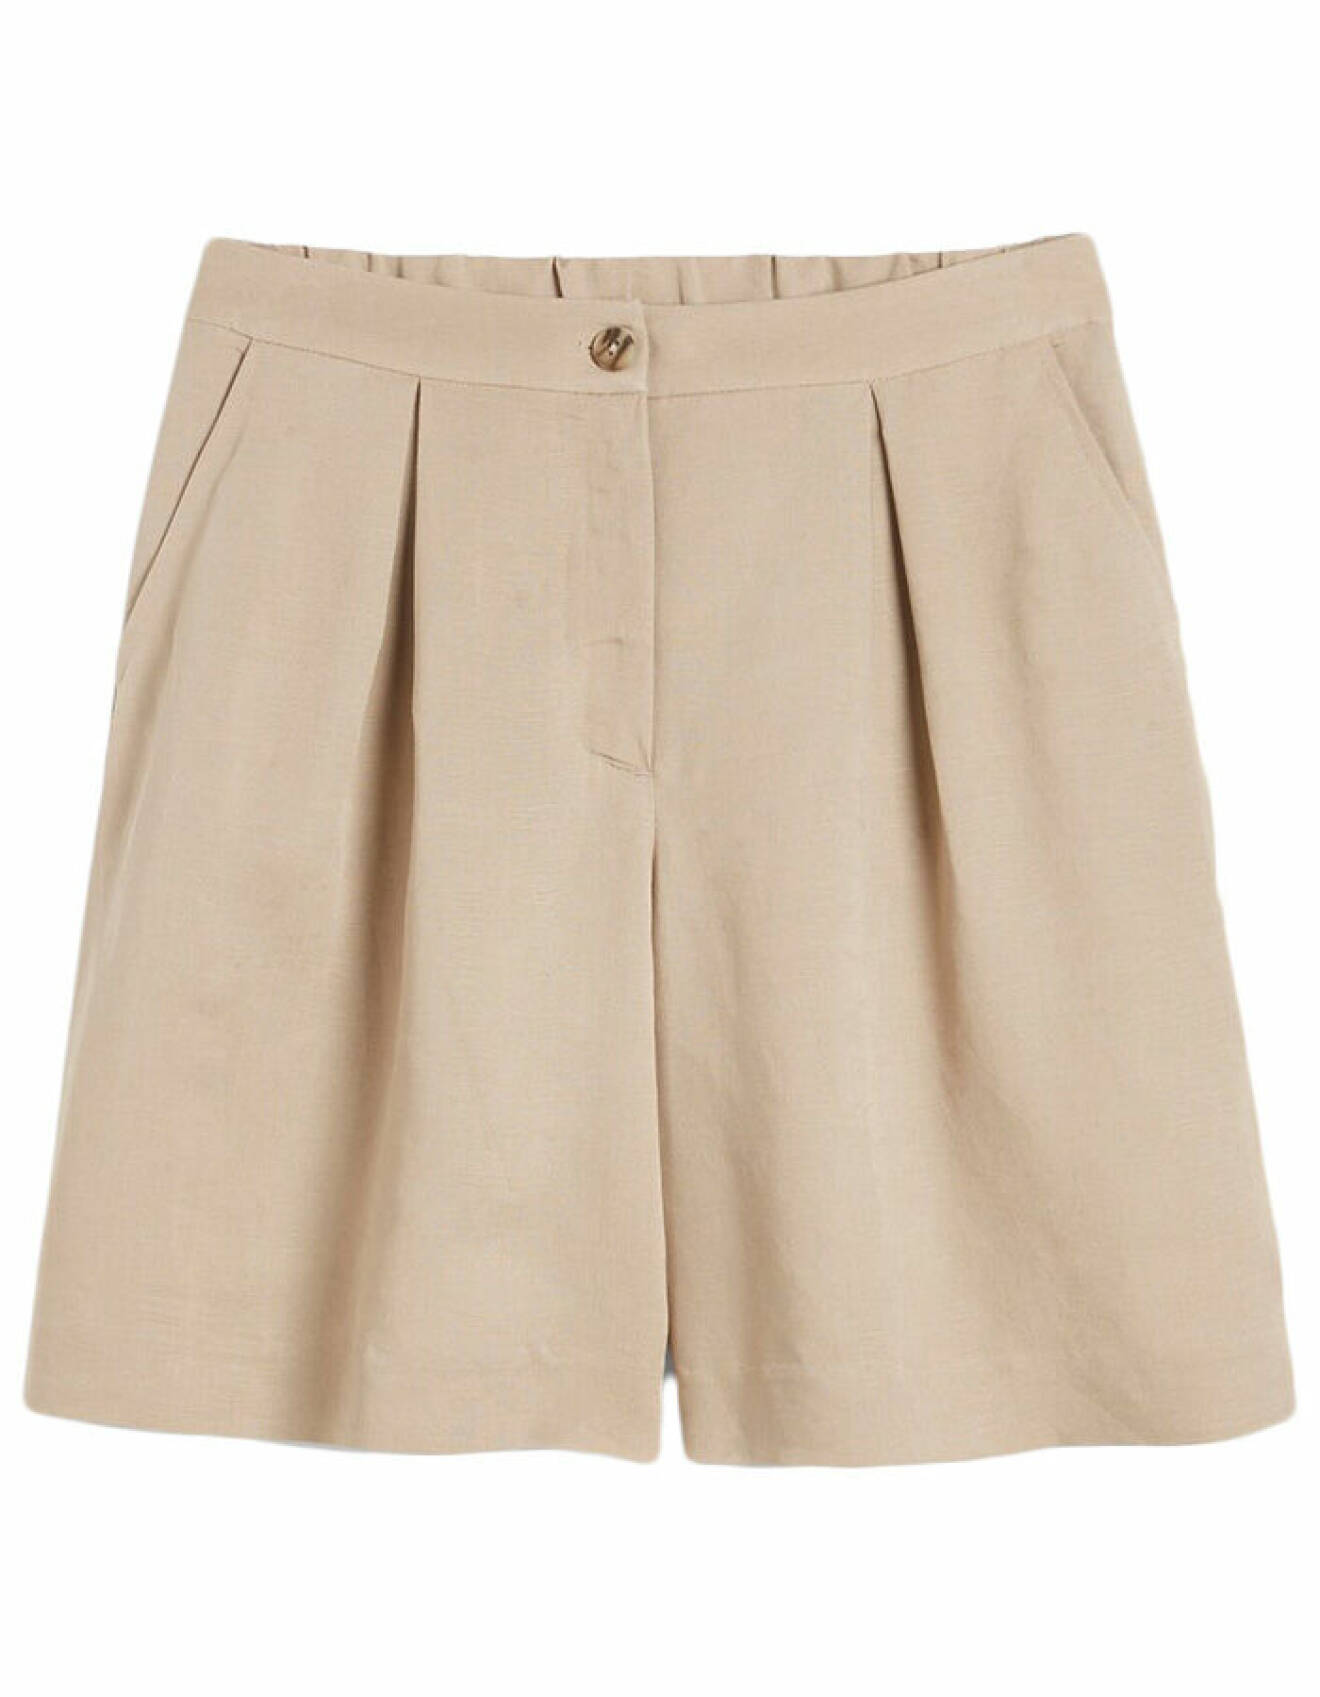 shorts i beige linne för dam från kappahl